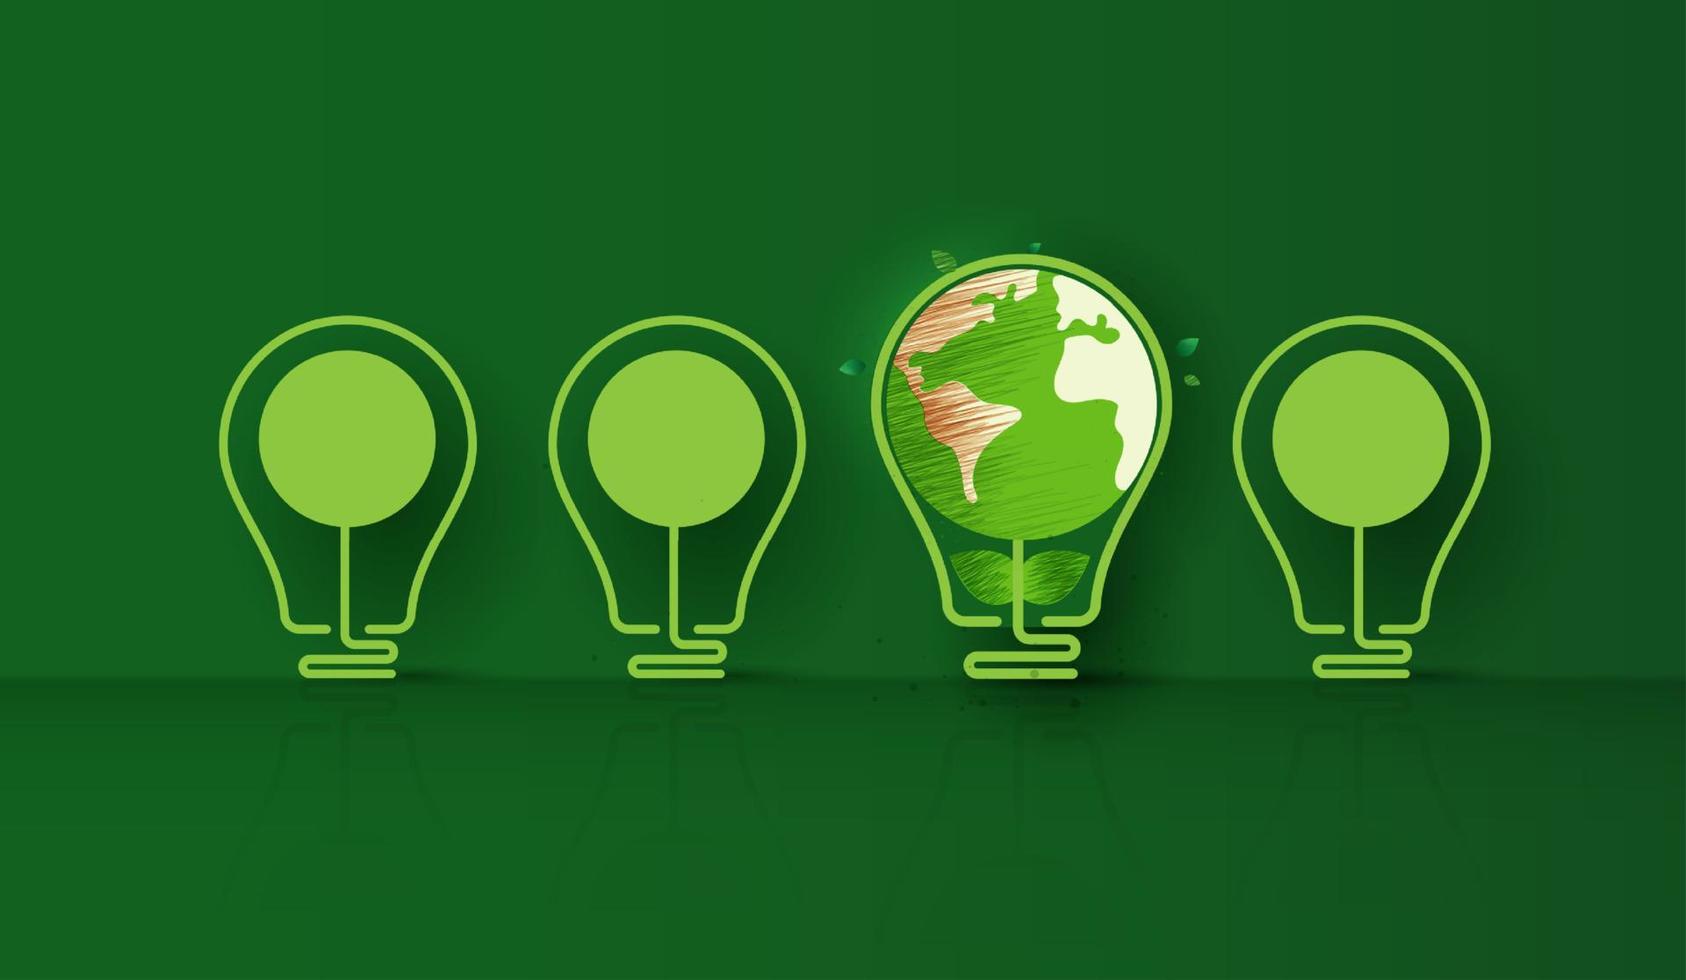 energibesparande ekolampteknik naturkoncept. glödlampa som sticker ut från obelyst glödlampa ljus på grön bakgrund. tänk grön ekologi och spara energi kreativt idékoncept. vektor design